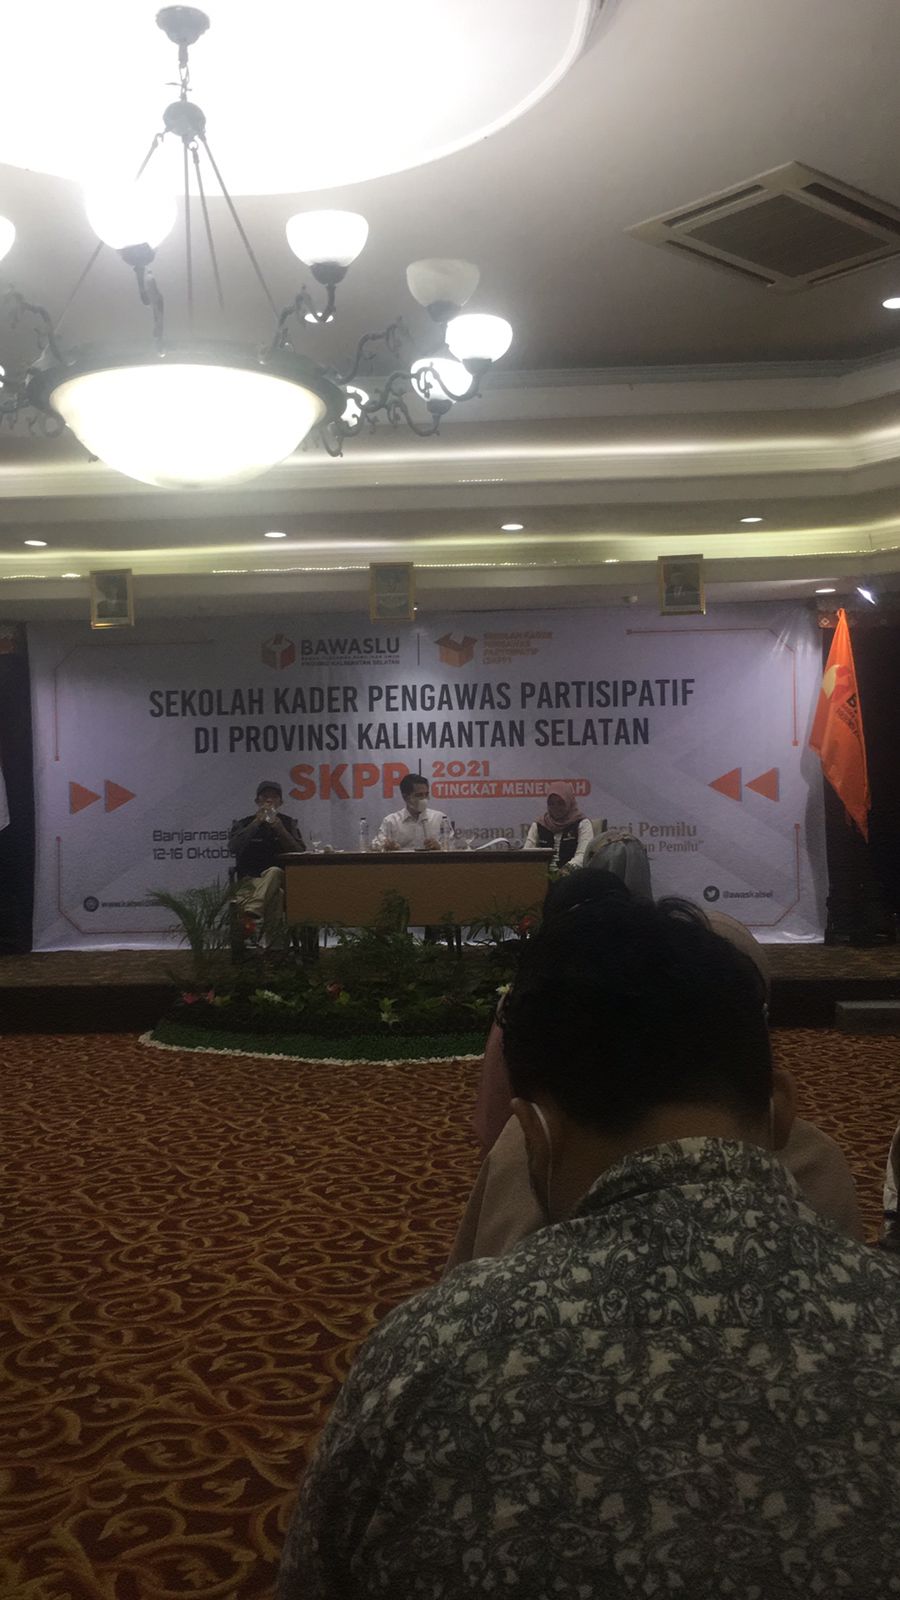 Bawaslu Provinsi Kalimantan Selatan saat mengadakan Sekolah Kader Pengawas Partisipasif (SKPP) tingkat Provinsi.